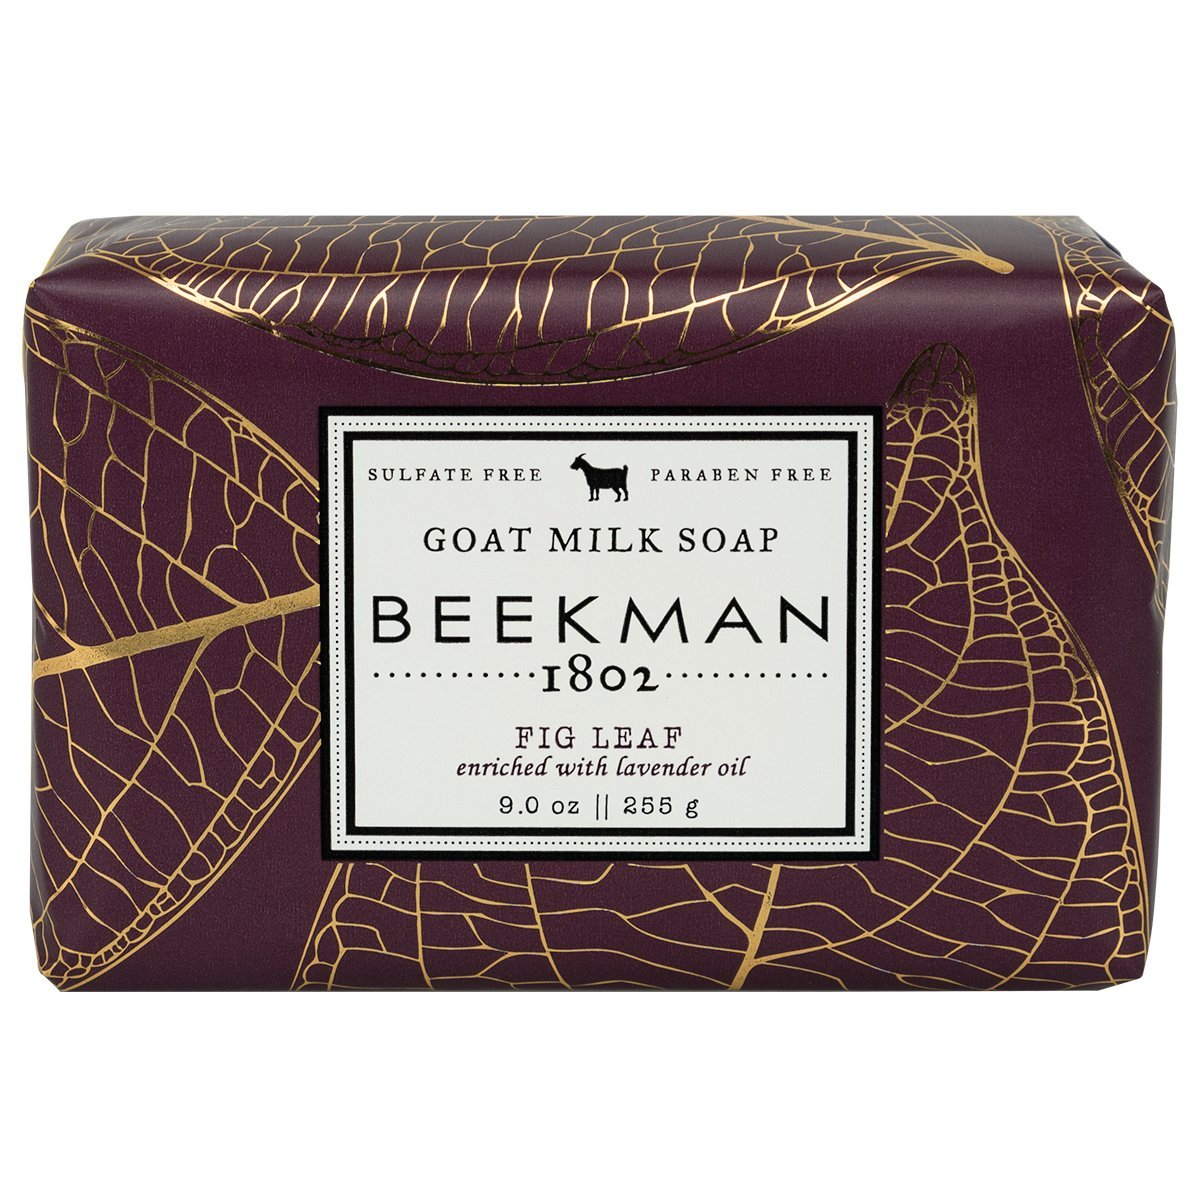 Beekman 1802 Fig Leaf Goat Milk Soap - 9.0 oz. - The Finished Room